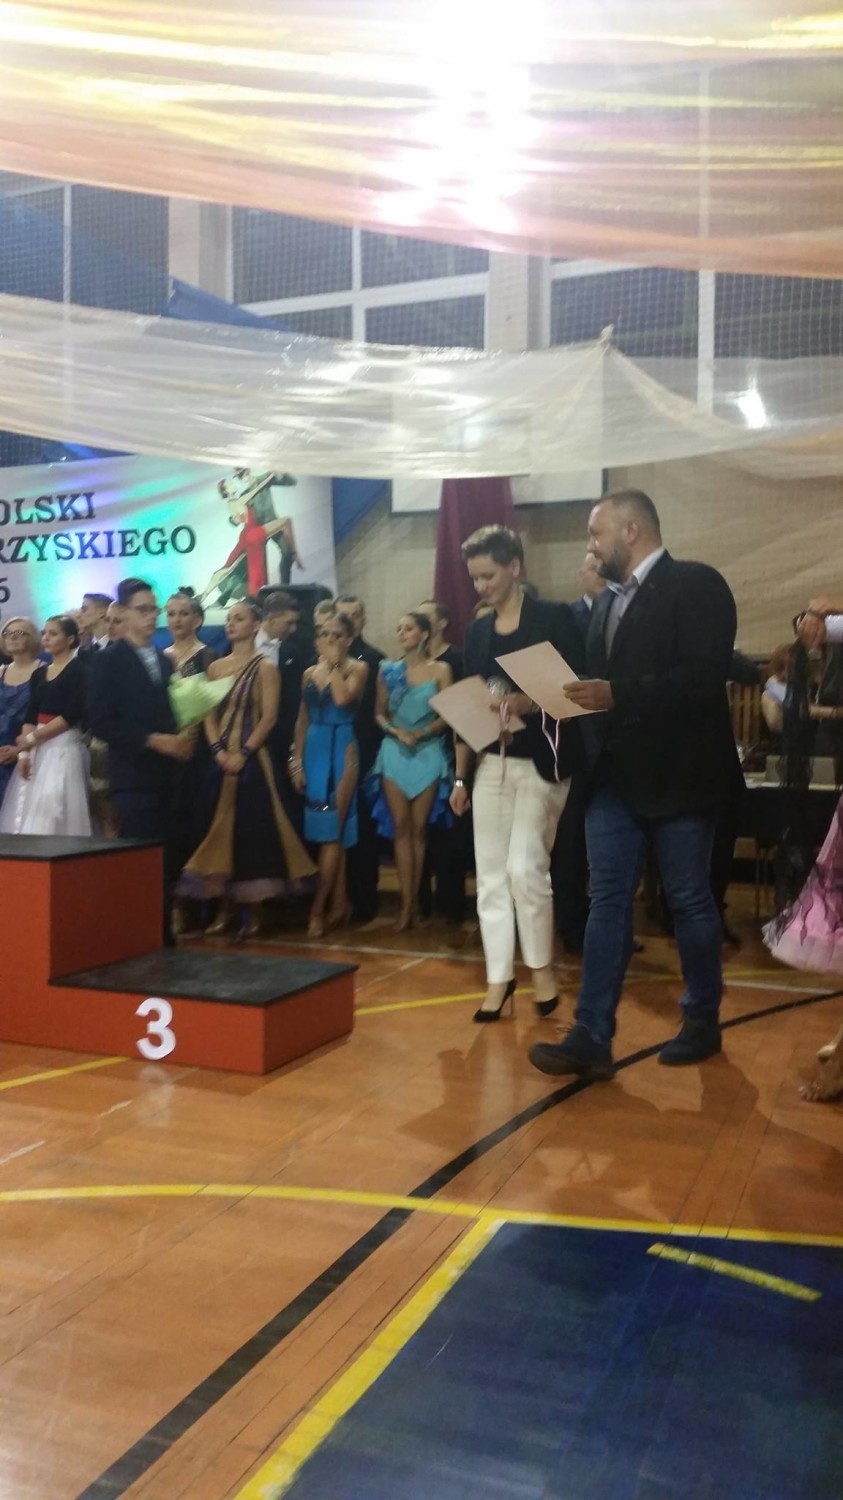 Ogólnopolski Turniej Tańca Towarzyskiego – Węglowice 2016